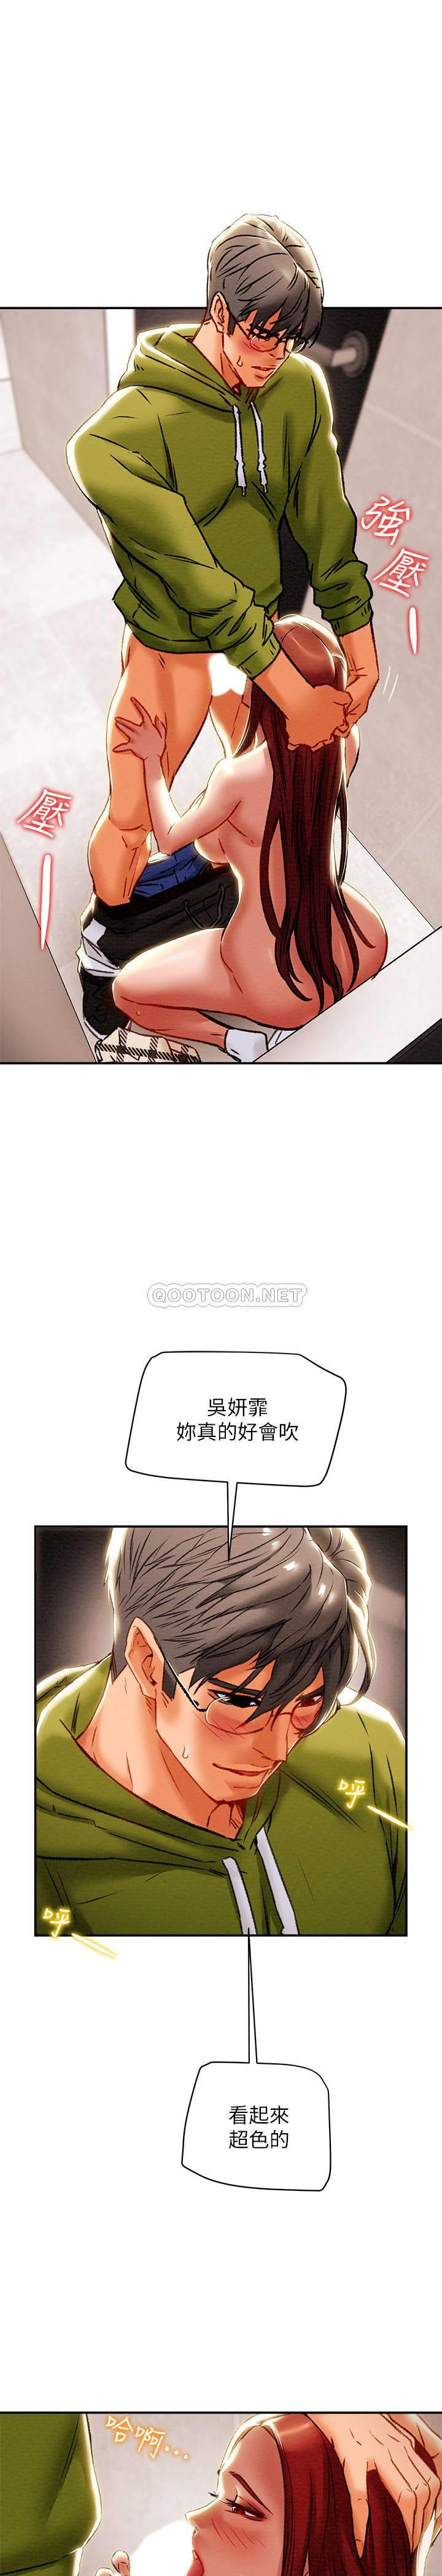 《纯情女攻略计划》漫画 第26话 - 说跟我做爱最爽!